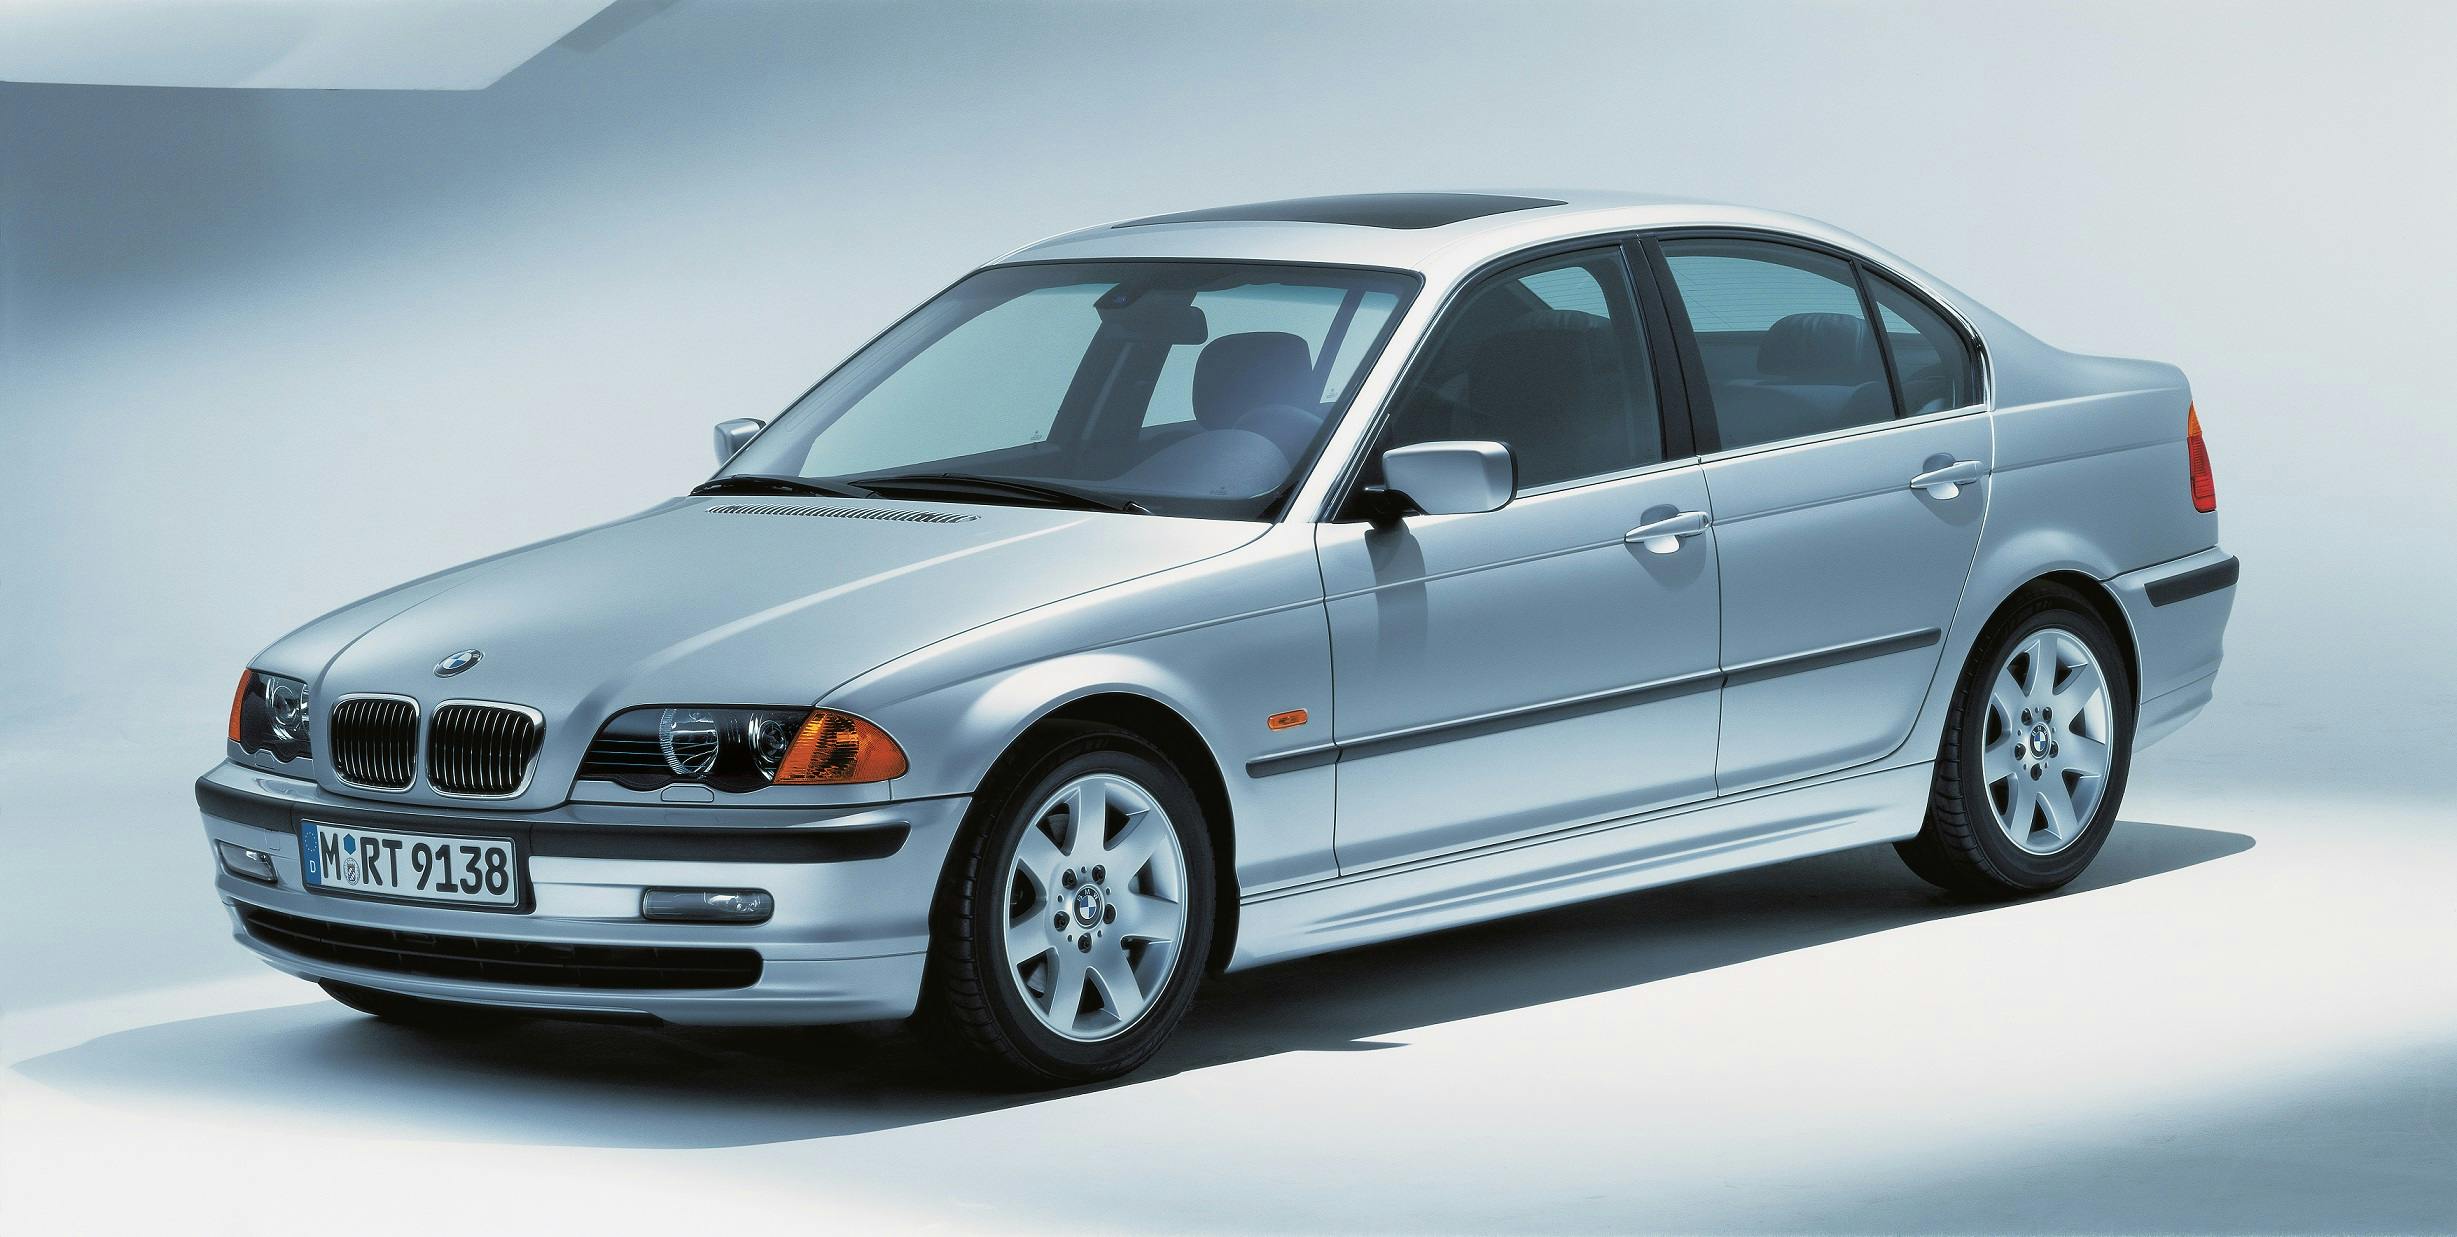 Foto (Bild): BMW 3er E46 Limousine - 1998 bis 2005 - Bild 4 ()